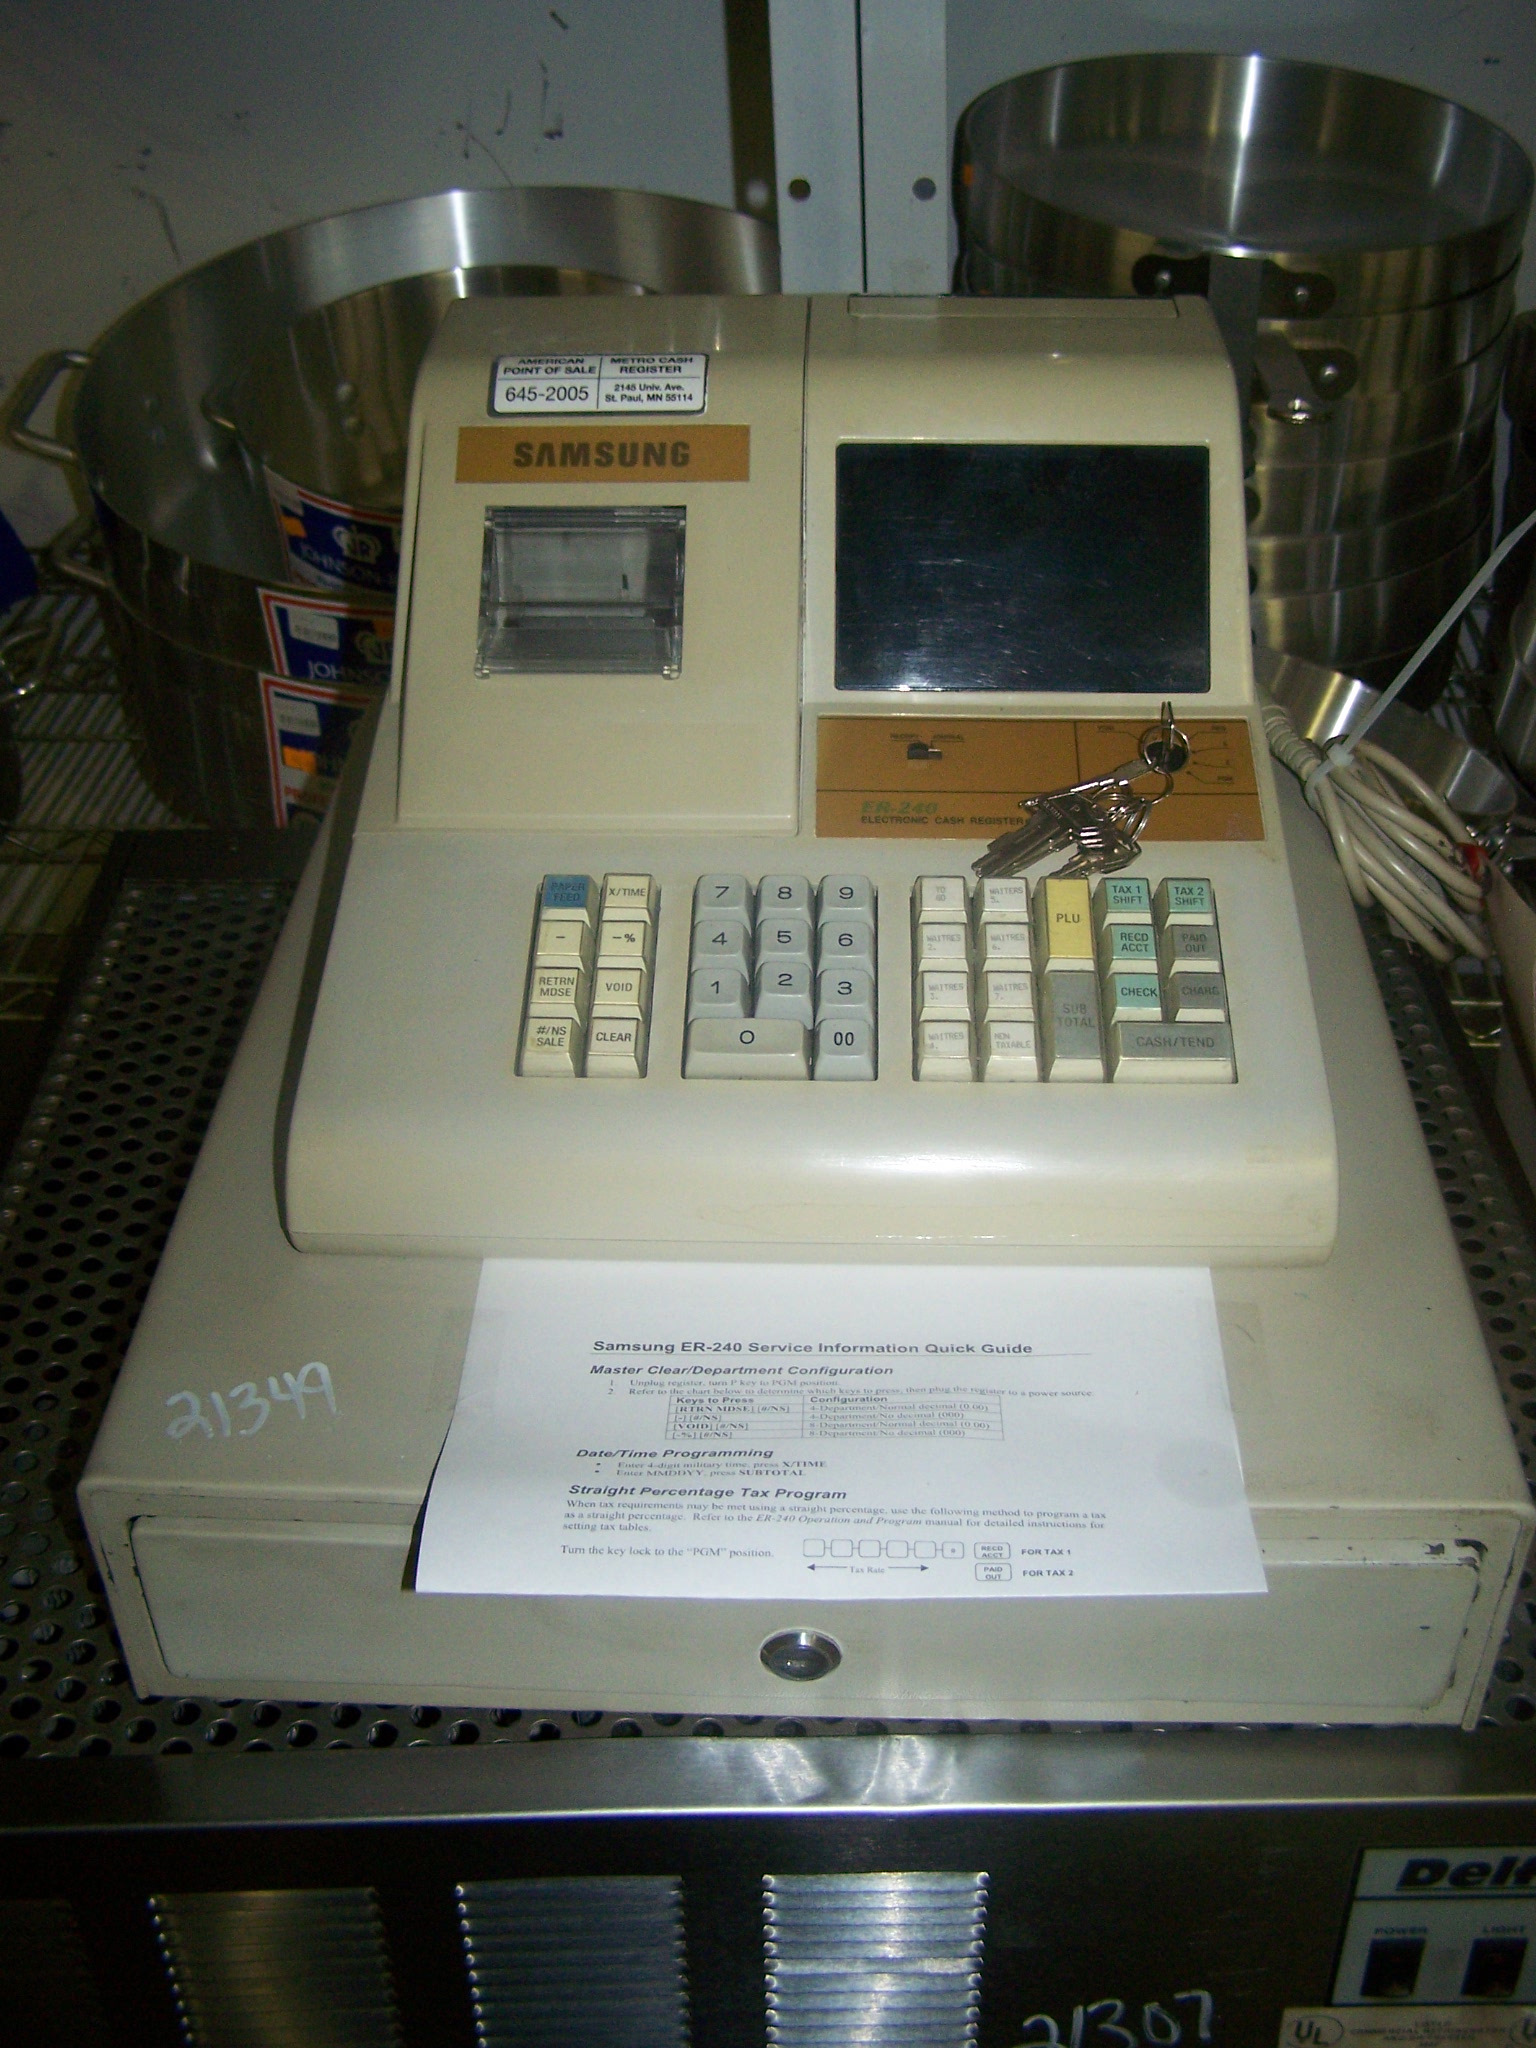 used cash register for sale